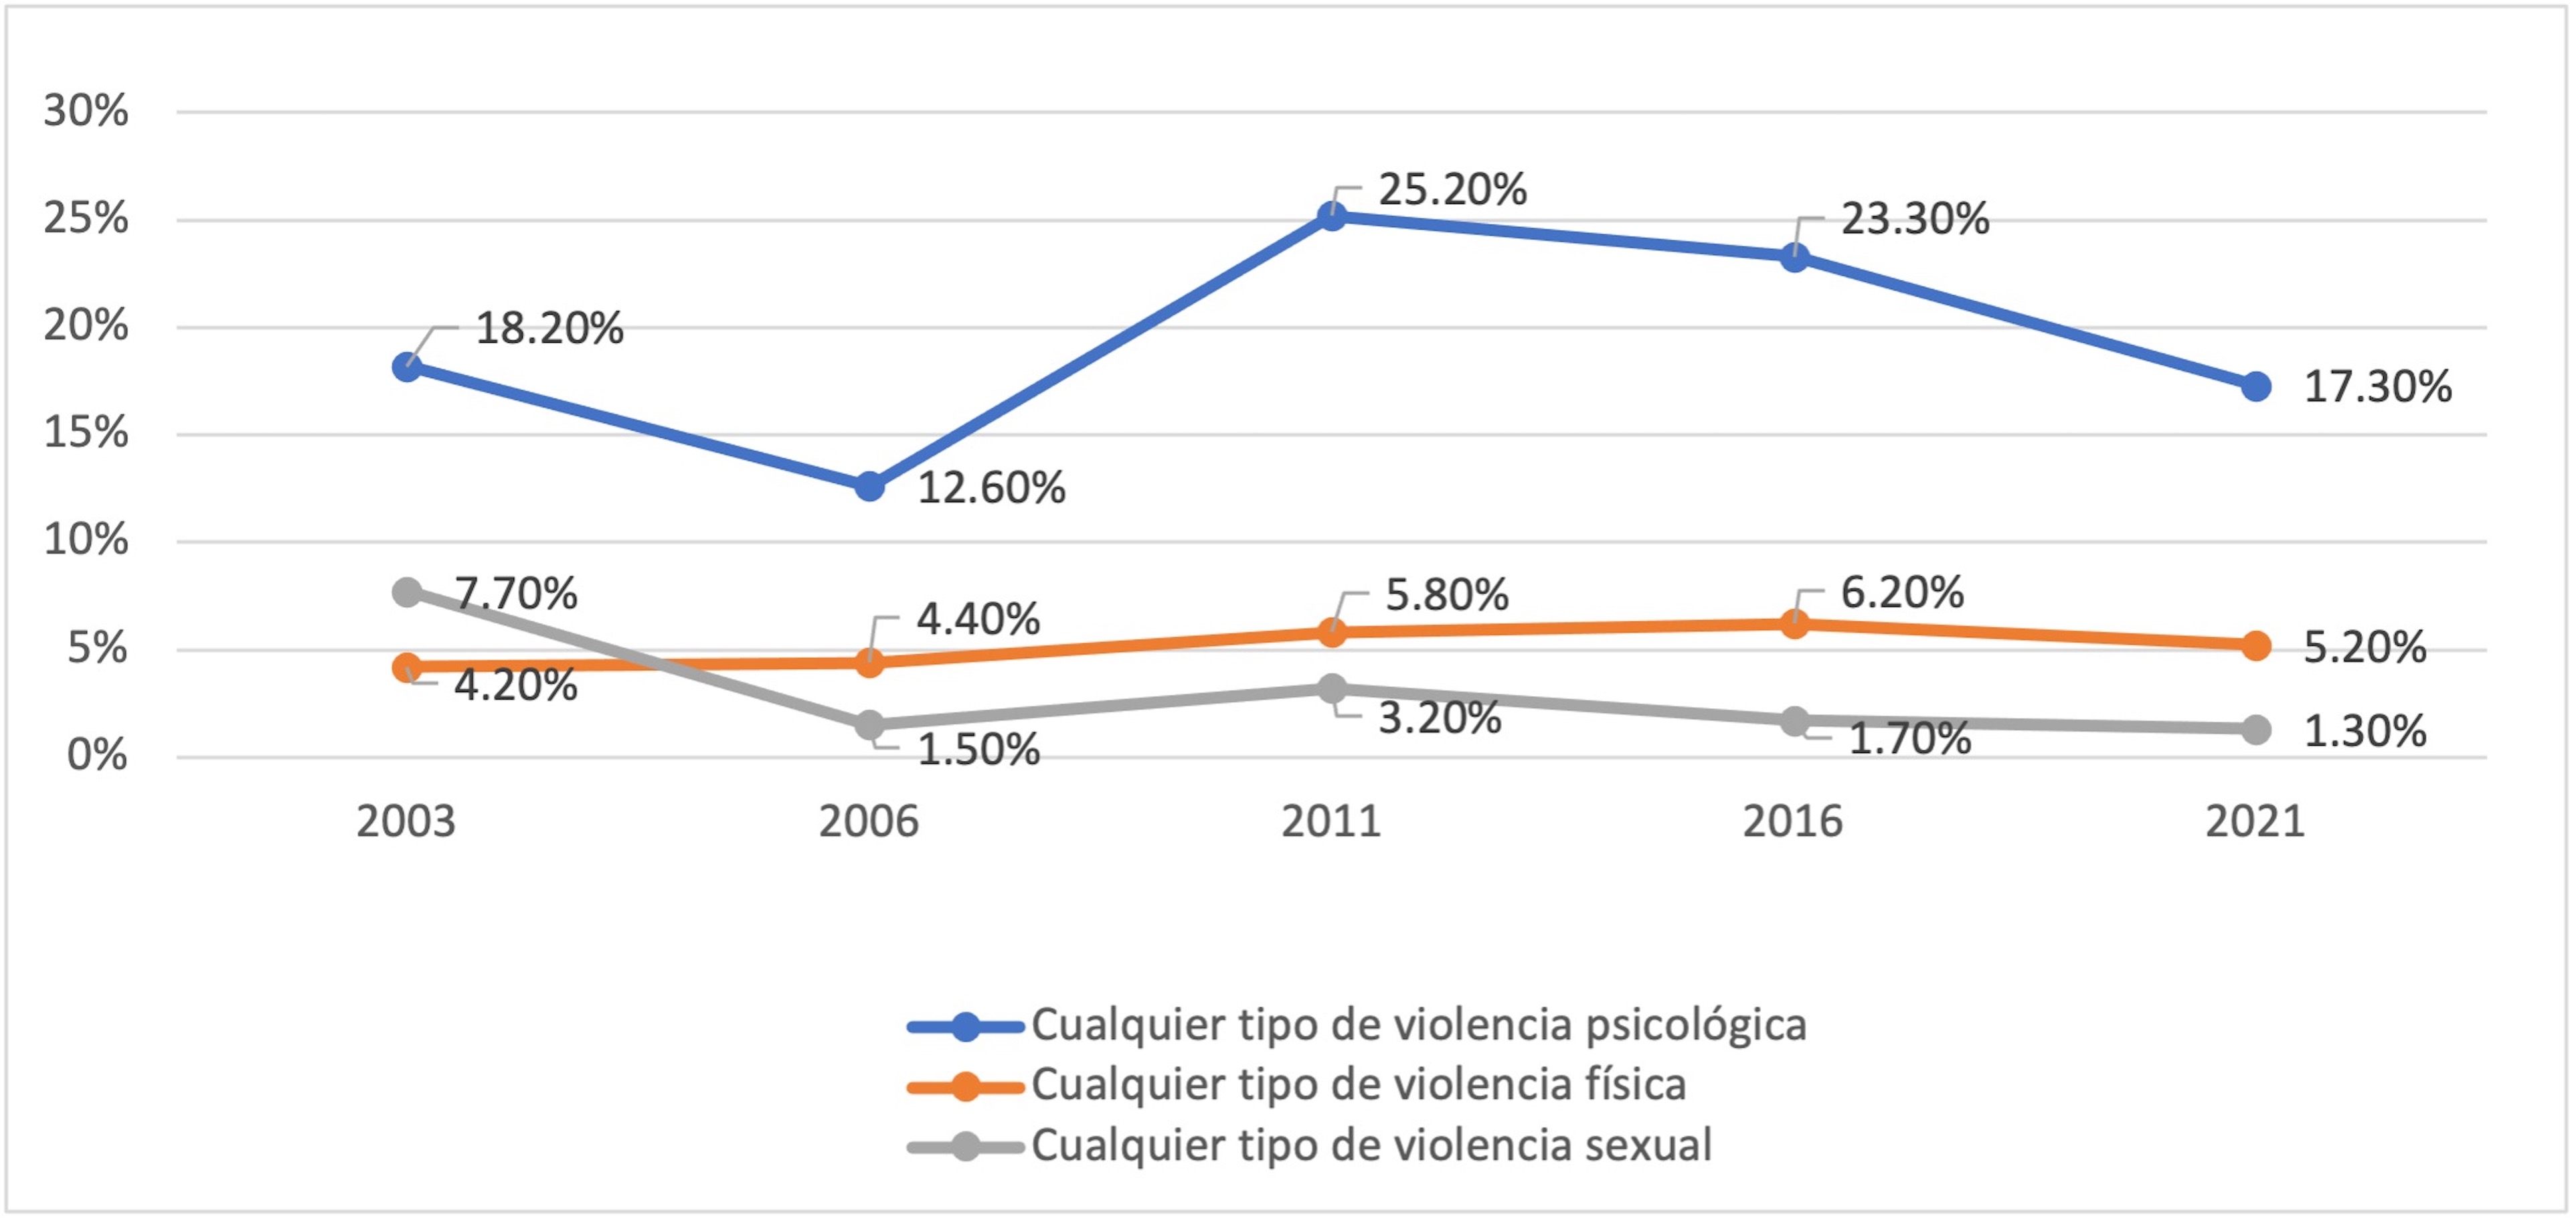 Prevalencia de violencia de pareja
reciente en las mujeres casadas o unidas de Chihuahua 2003-2021